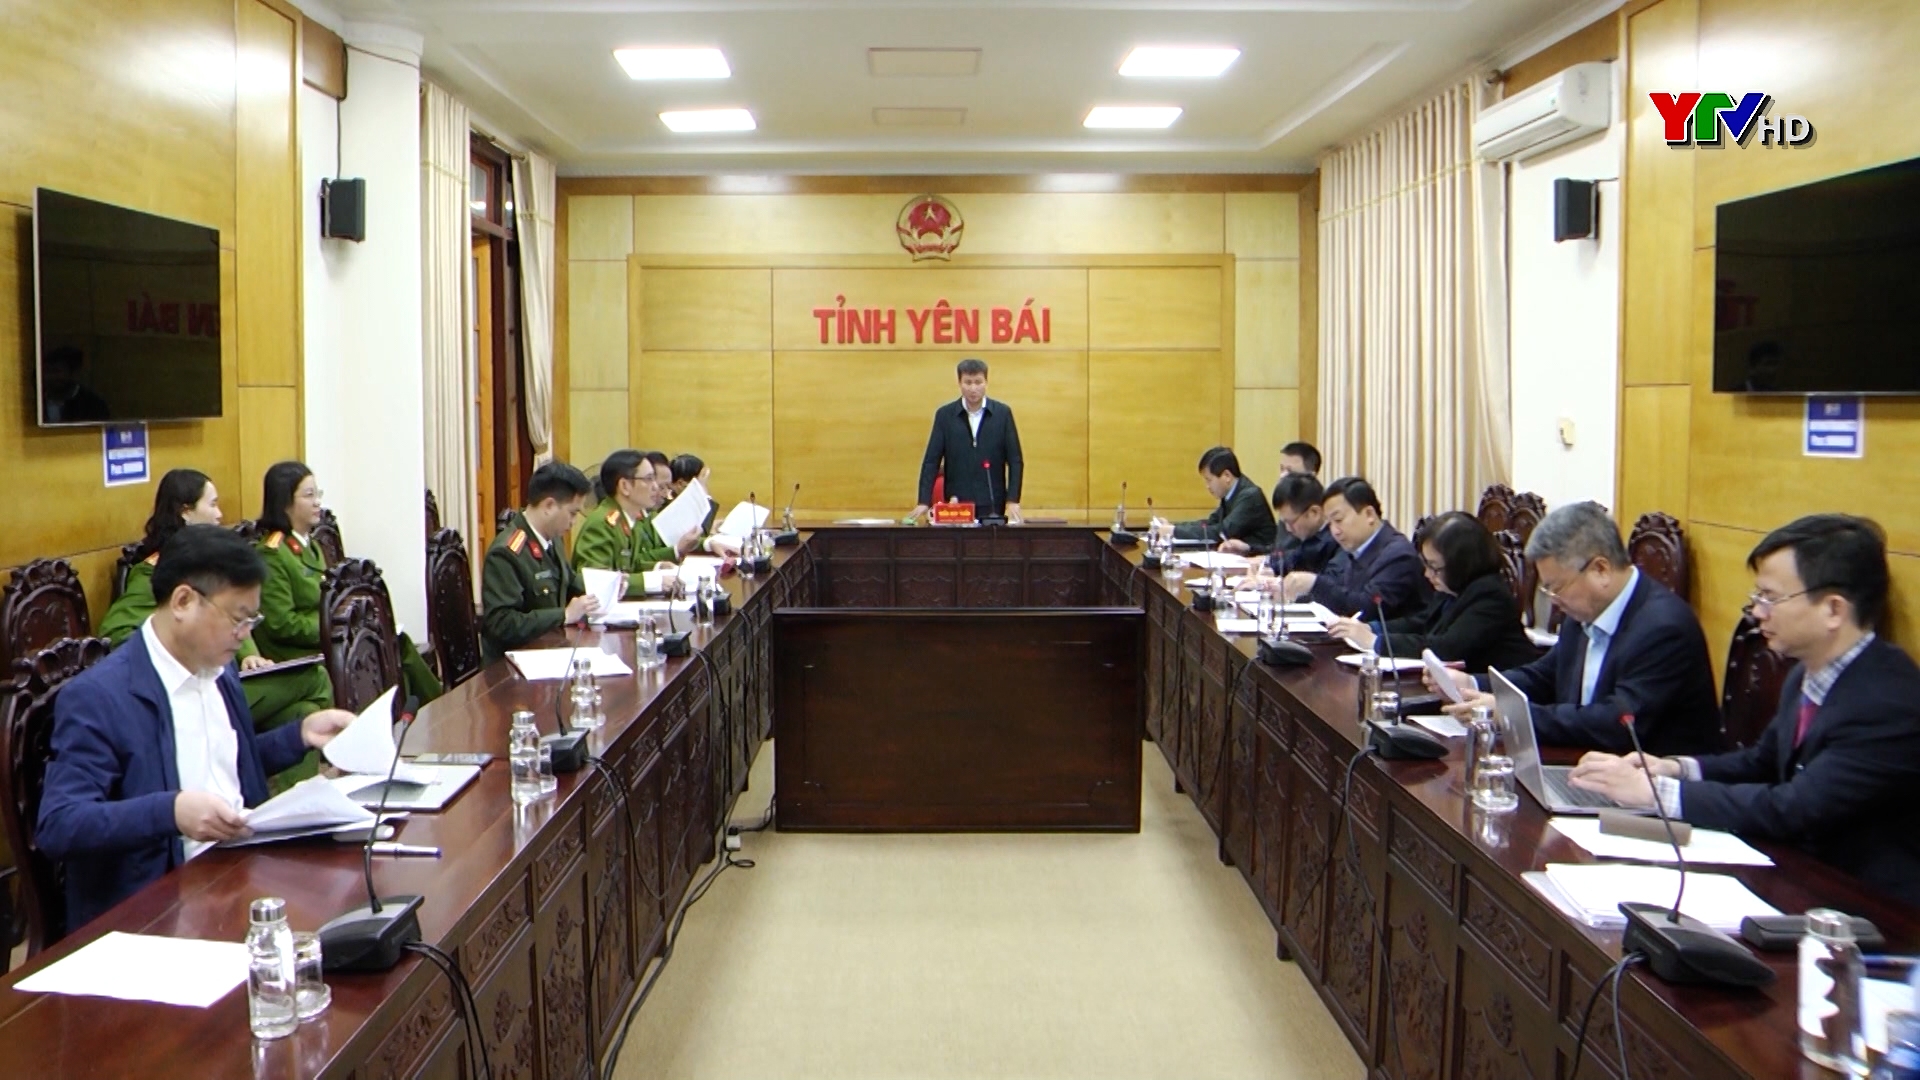 Đồng chí Chủ tịch UBND tỉnh Trần Huy Tuấn: Quyết liệt thực hiện hiệu quả các nhiệm vụ của Đề án 06, đảm bảo thống nhất, đồng bộ theo yêu cầu